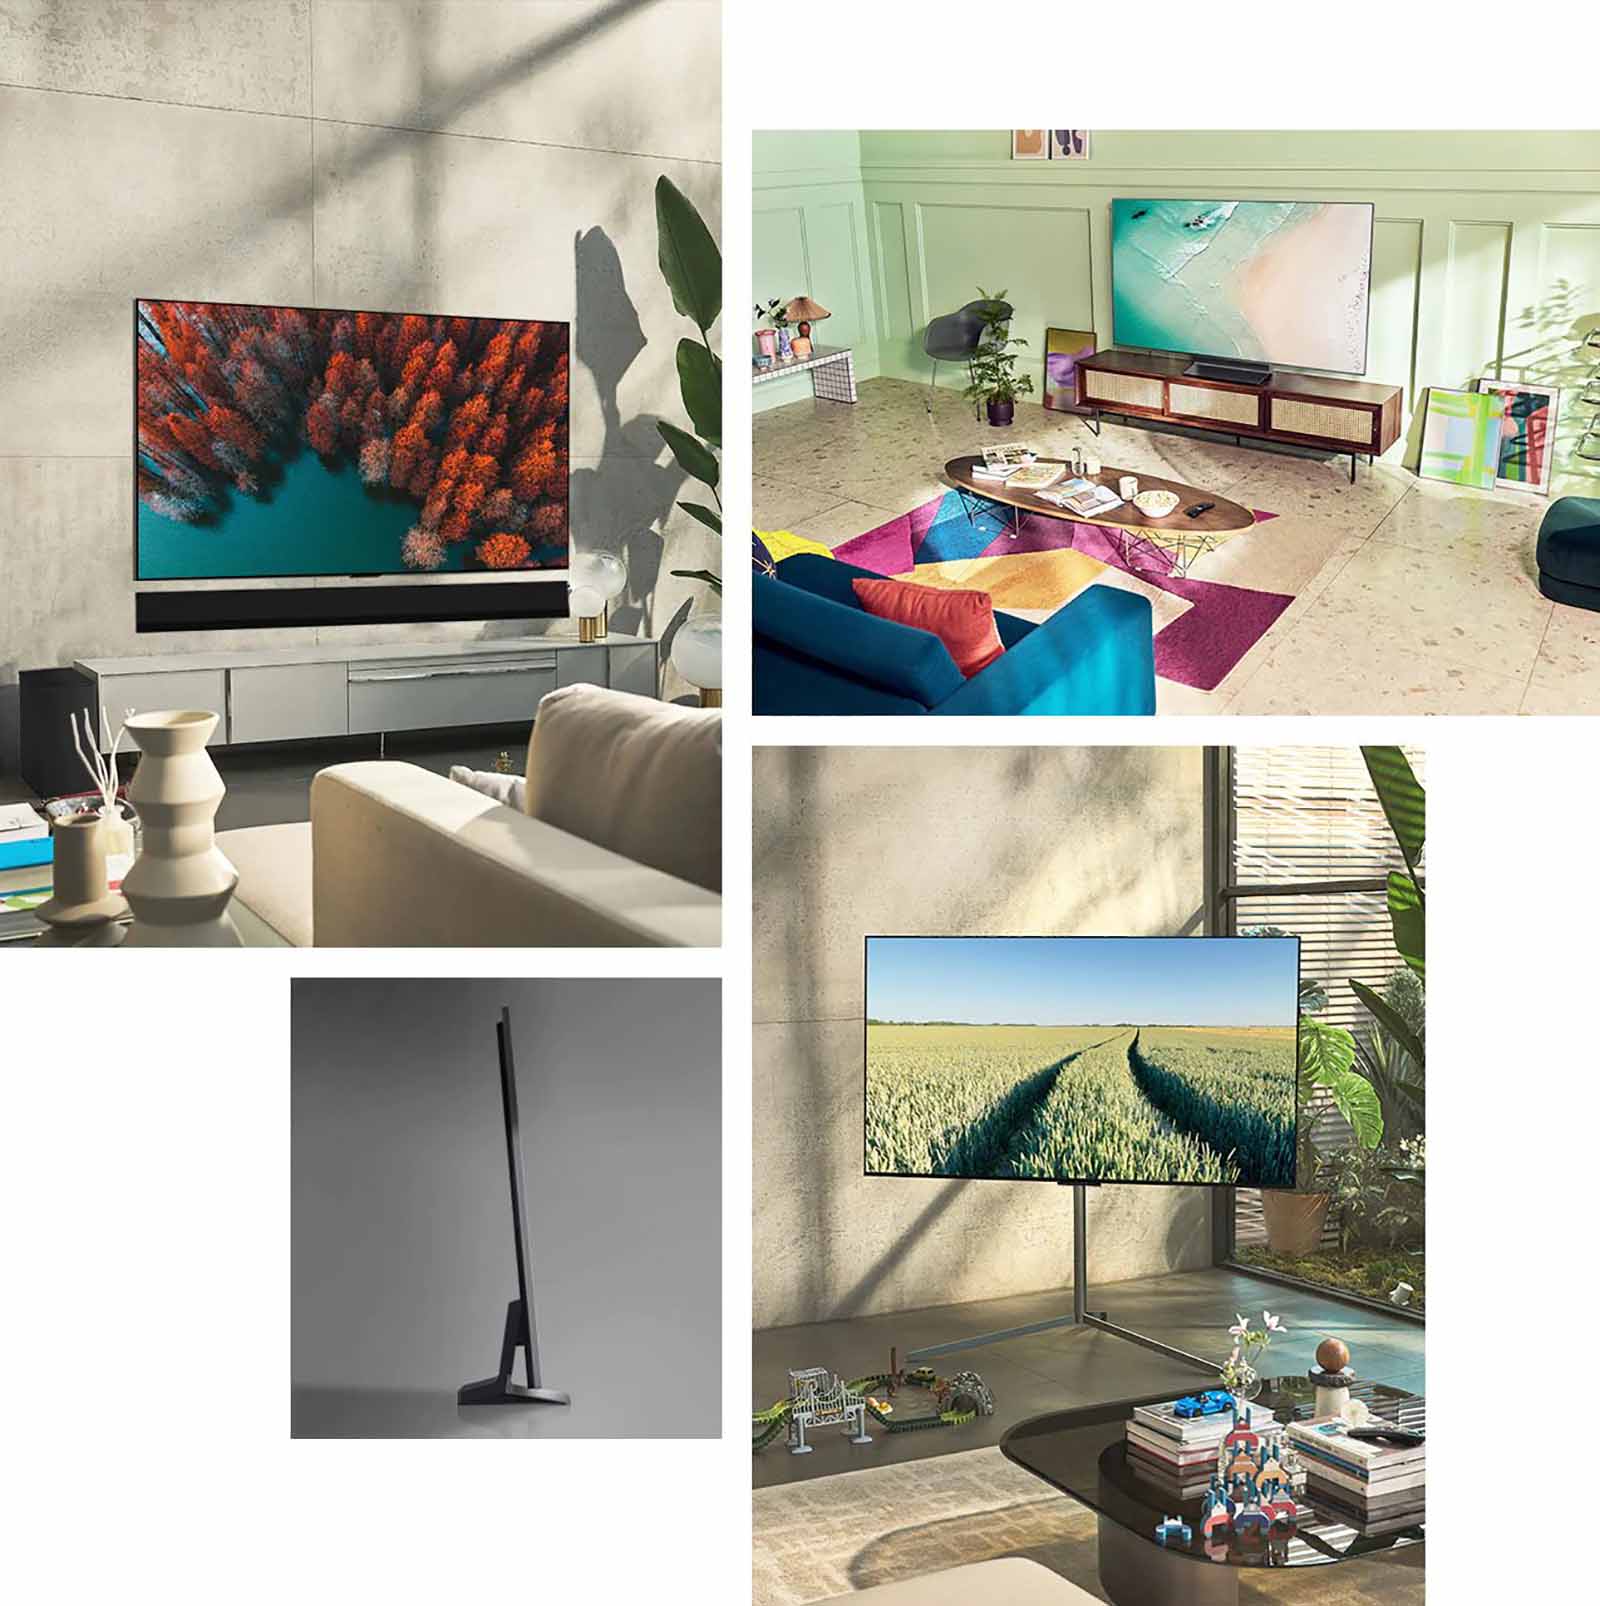 OLED-телевізор LG G2 висить на стіні у вітальні з рослинами, чаркою книг та шафою у вінтажному стилі.  OLED-телевізор LG G2 висить на стіні поруч із полицею з монохромними орнаментами в кімнаті в мінімалістському стилі.  Ультратонкий край OLED-телевізора LG G2, вид збоку.  OLED-телевізор LG G2 висить на стіні в барвистій вітальні з сухою рослиною, розпилювачем та вазами.  Зображення краю надтонкого OLED-телевізора LG G2 крупним планом.